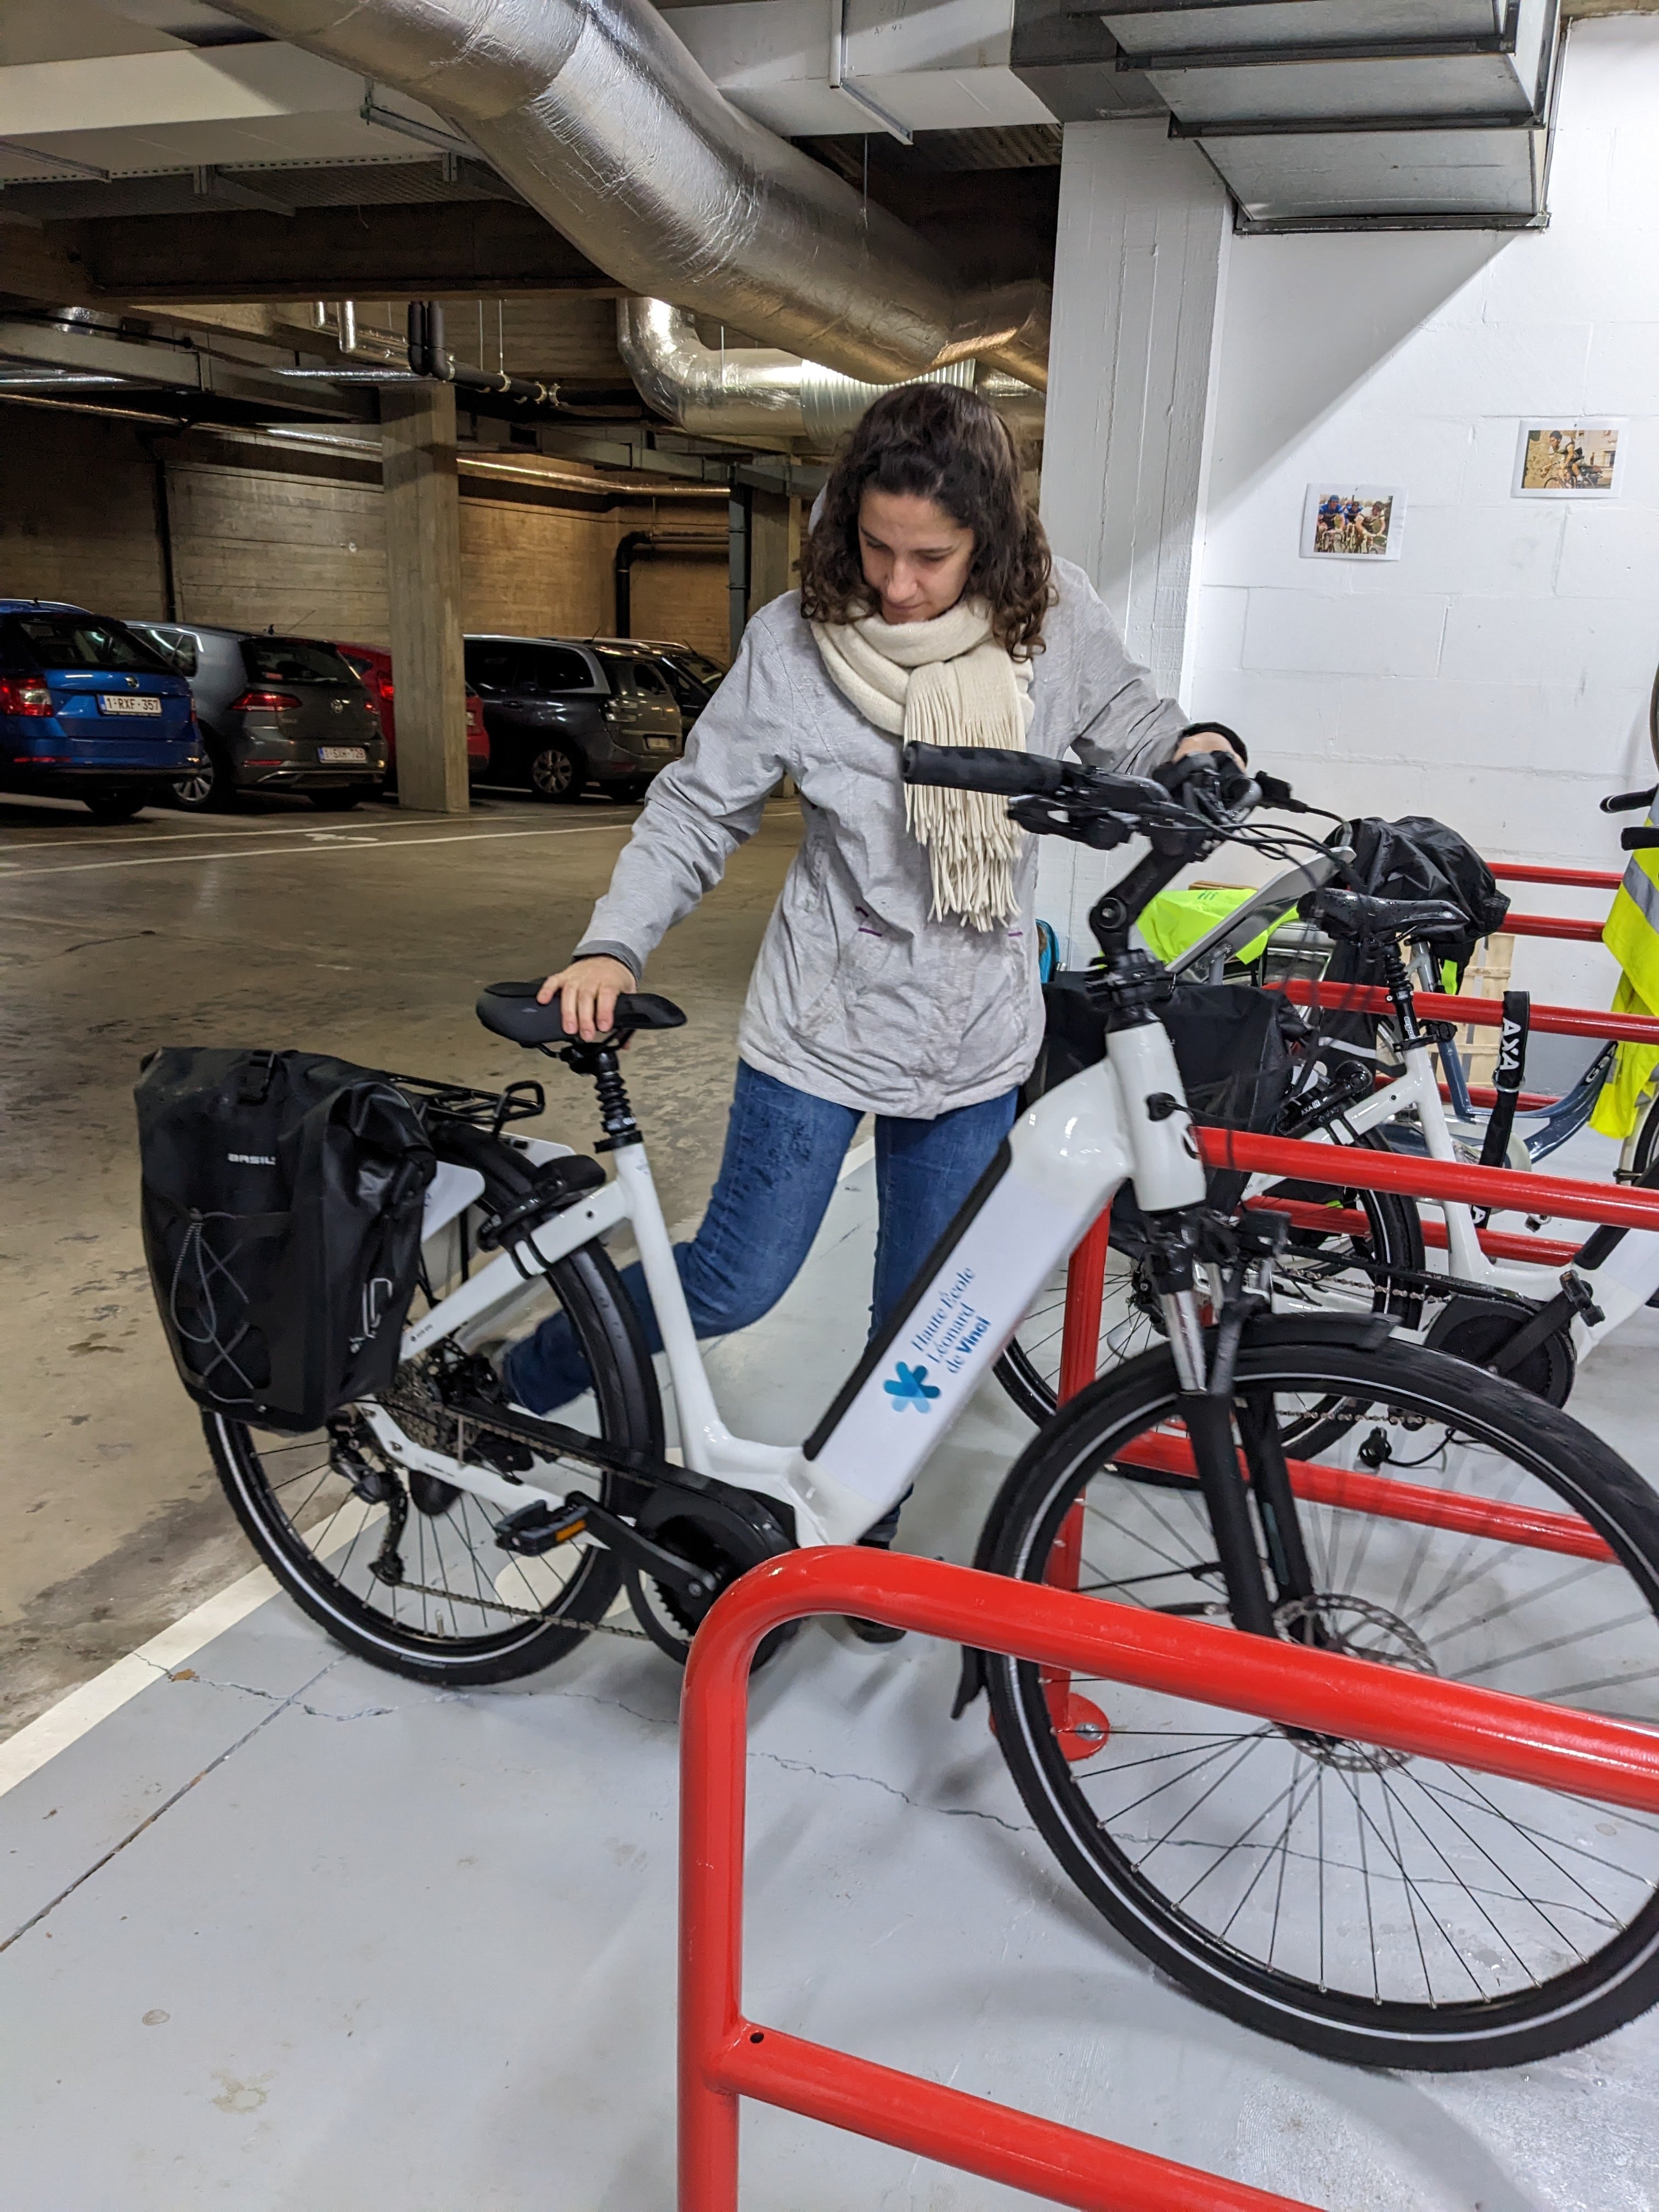 Essai d'un vélo électrique personnalisé pour la Haute Ecole Léonard de Vinci